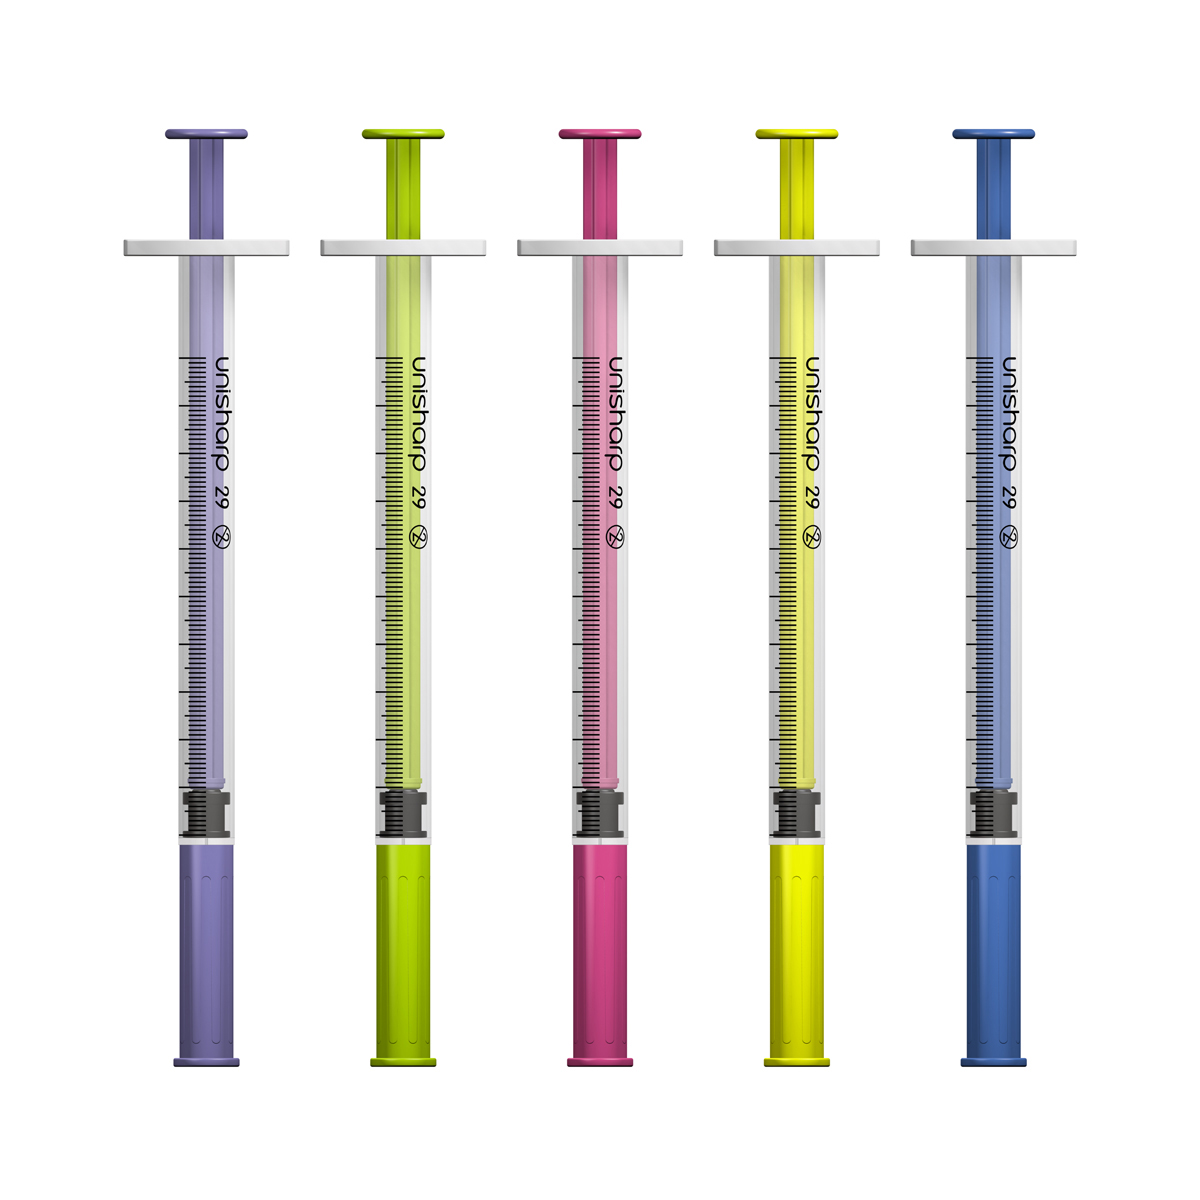 Unisharp 1ml 29G Fixed Needle Syringe (Australia)